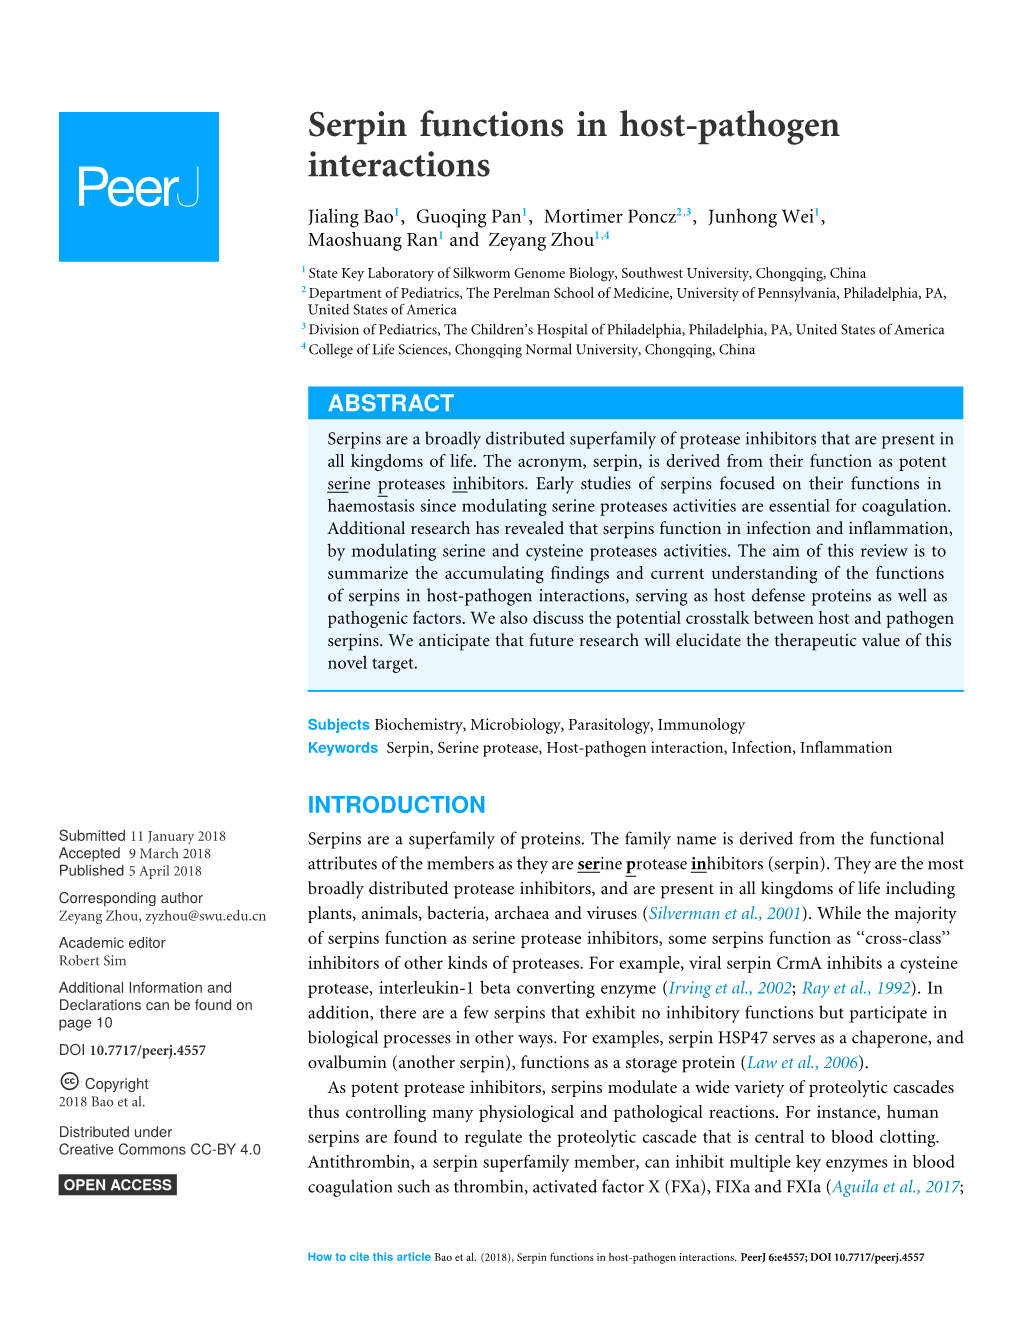 Serpin Functions in Host-Pathogen Interactions